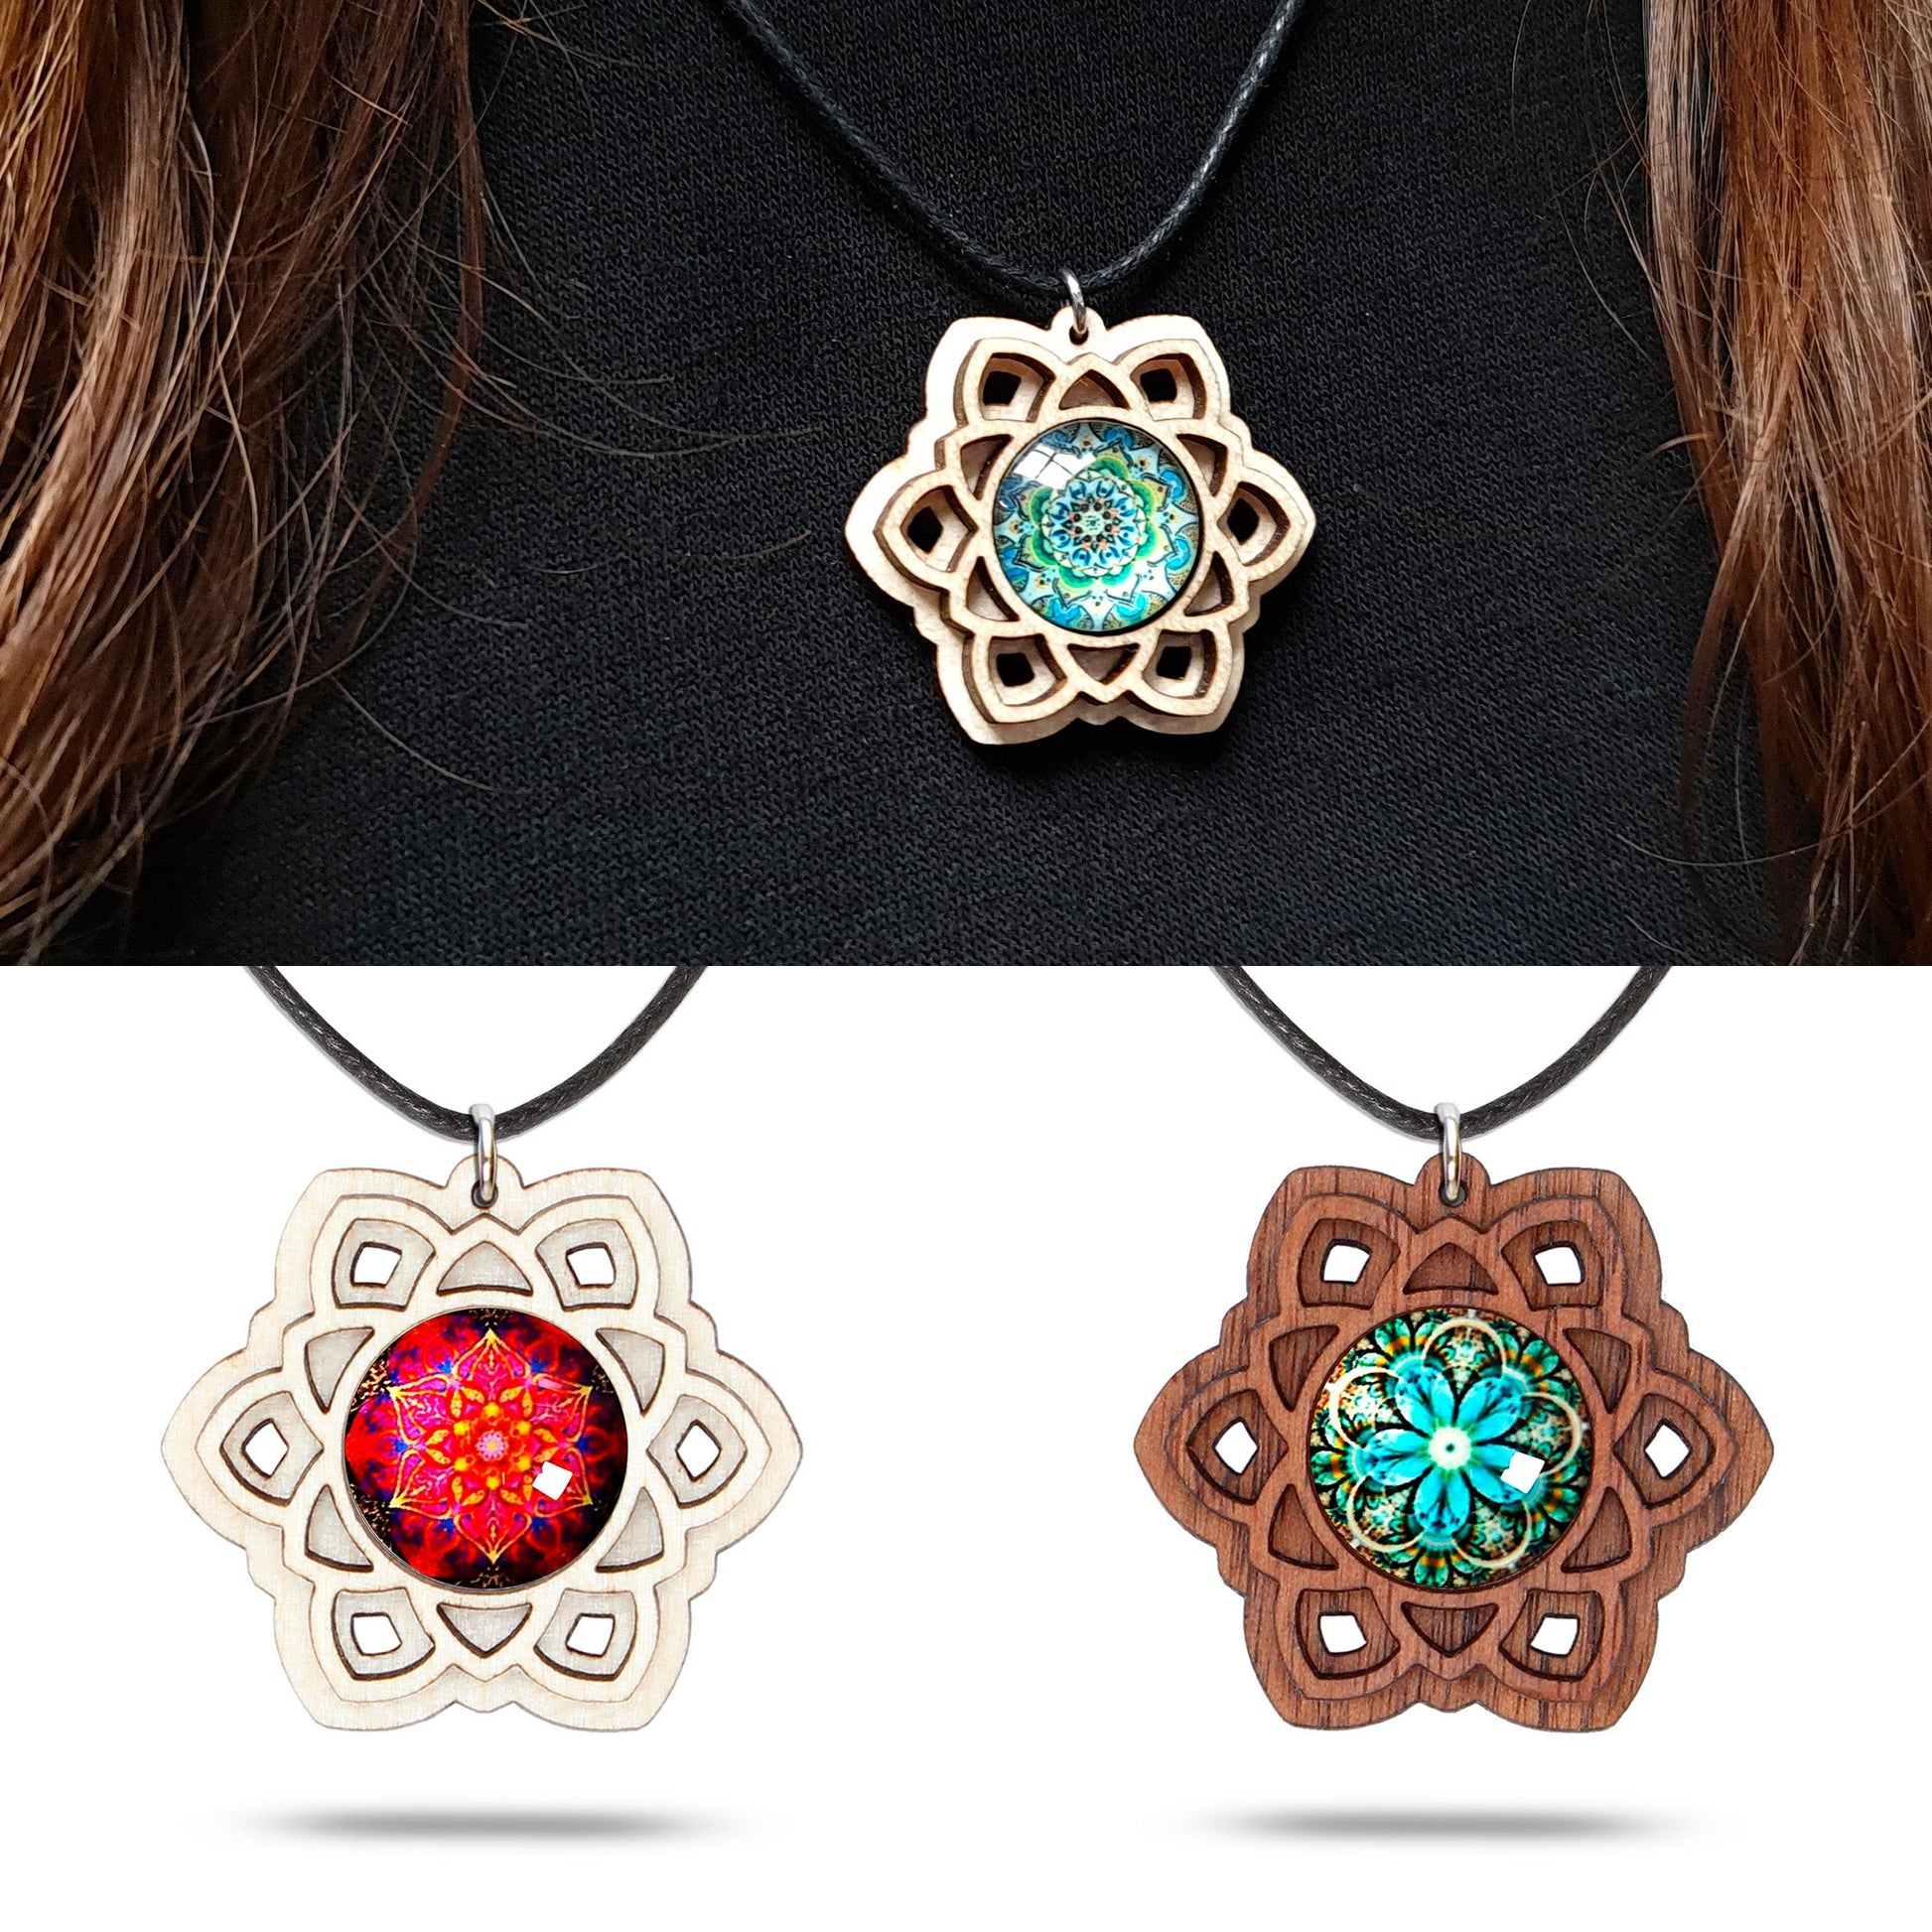 Halskette Mandala "Sonne" groß aus Holz mit Glasstein - Nanino Design Onlineshop -